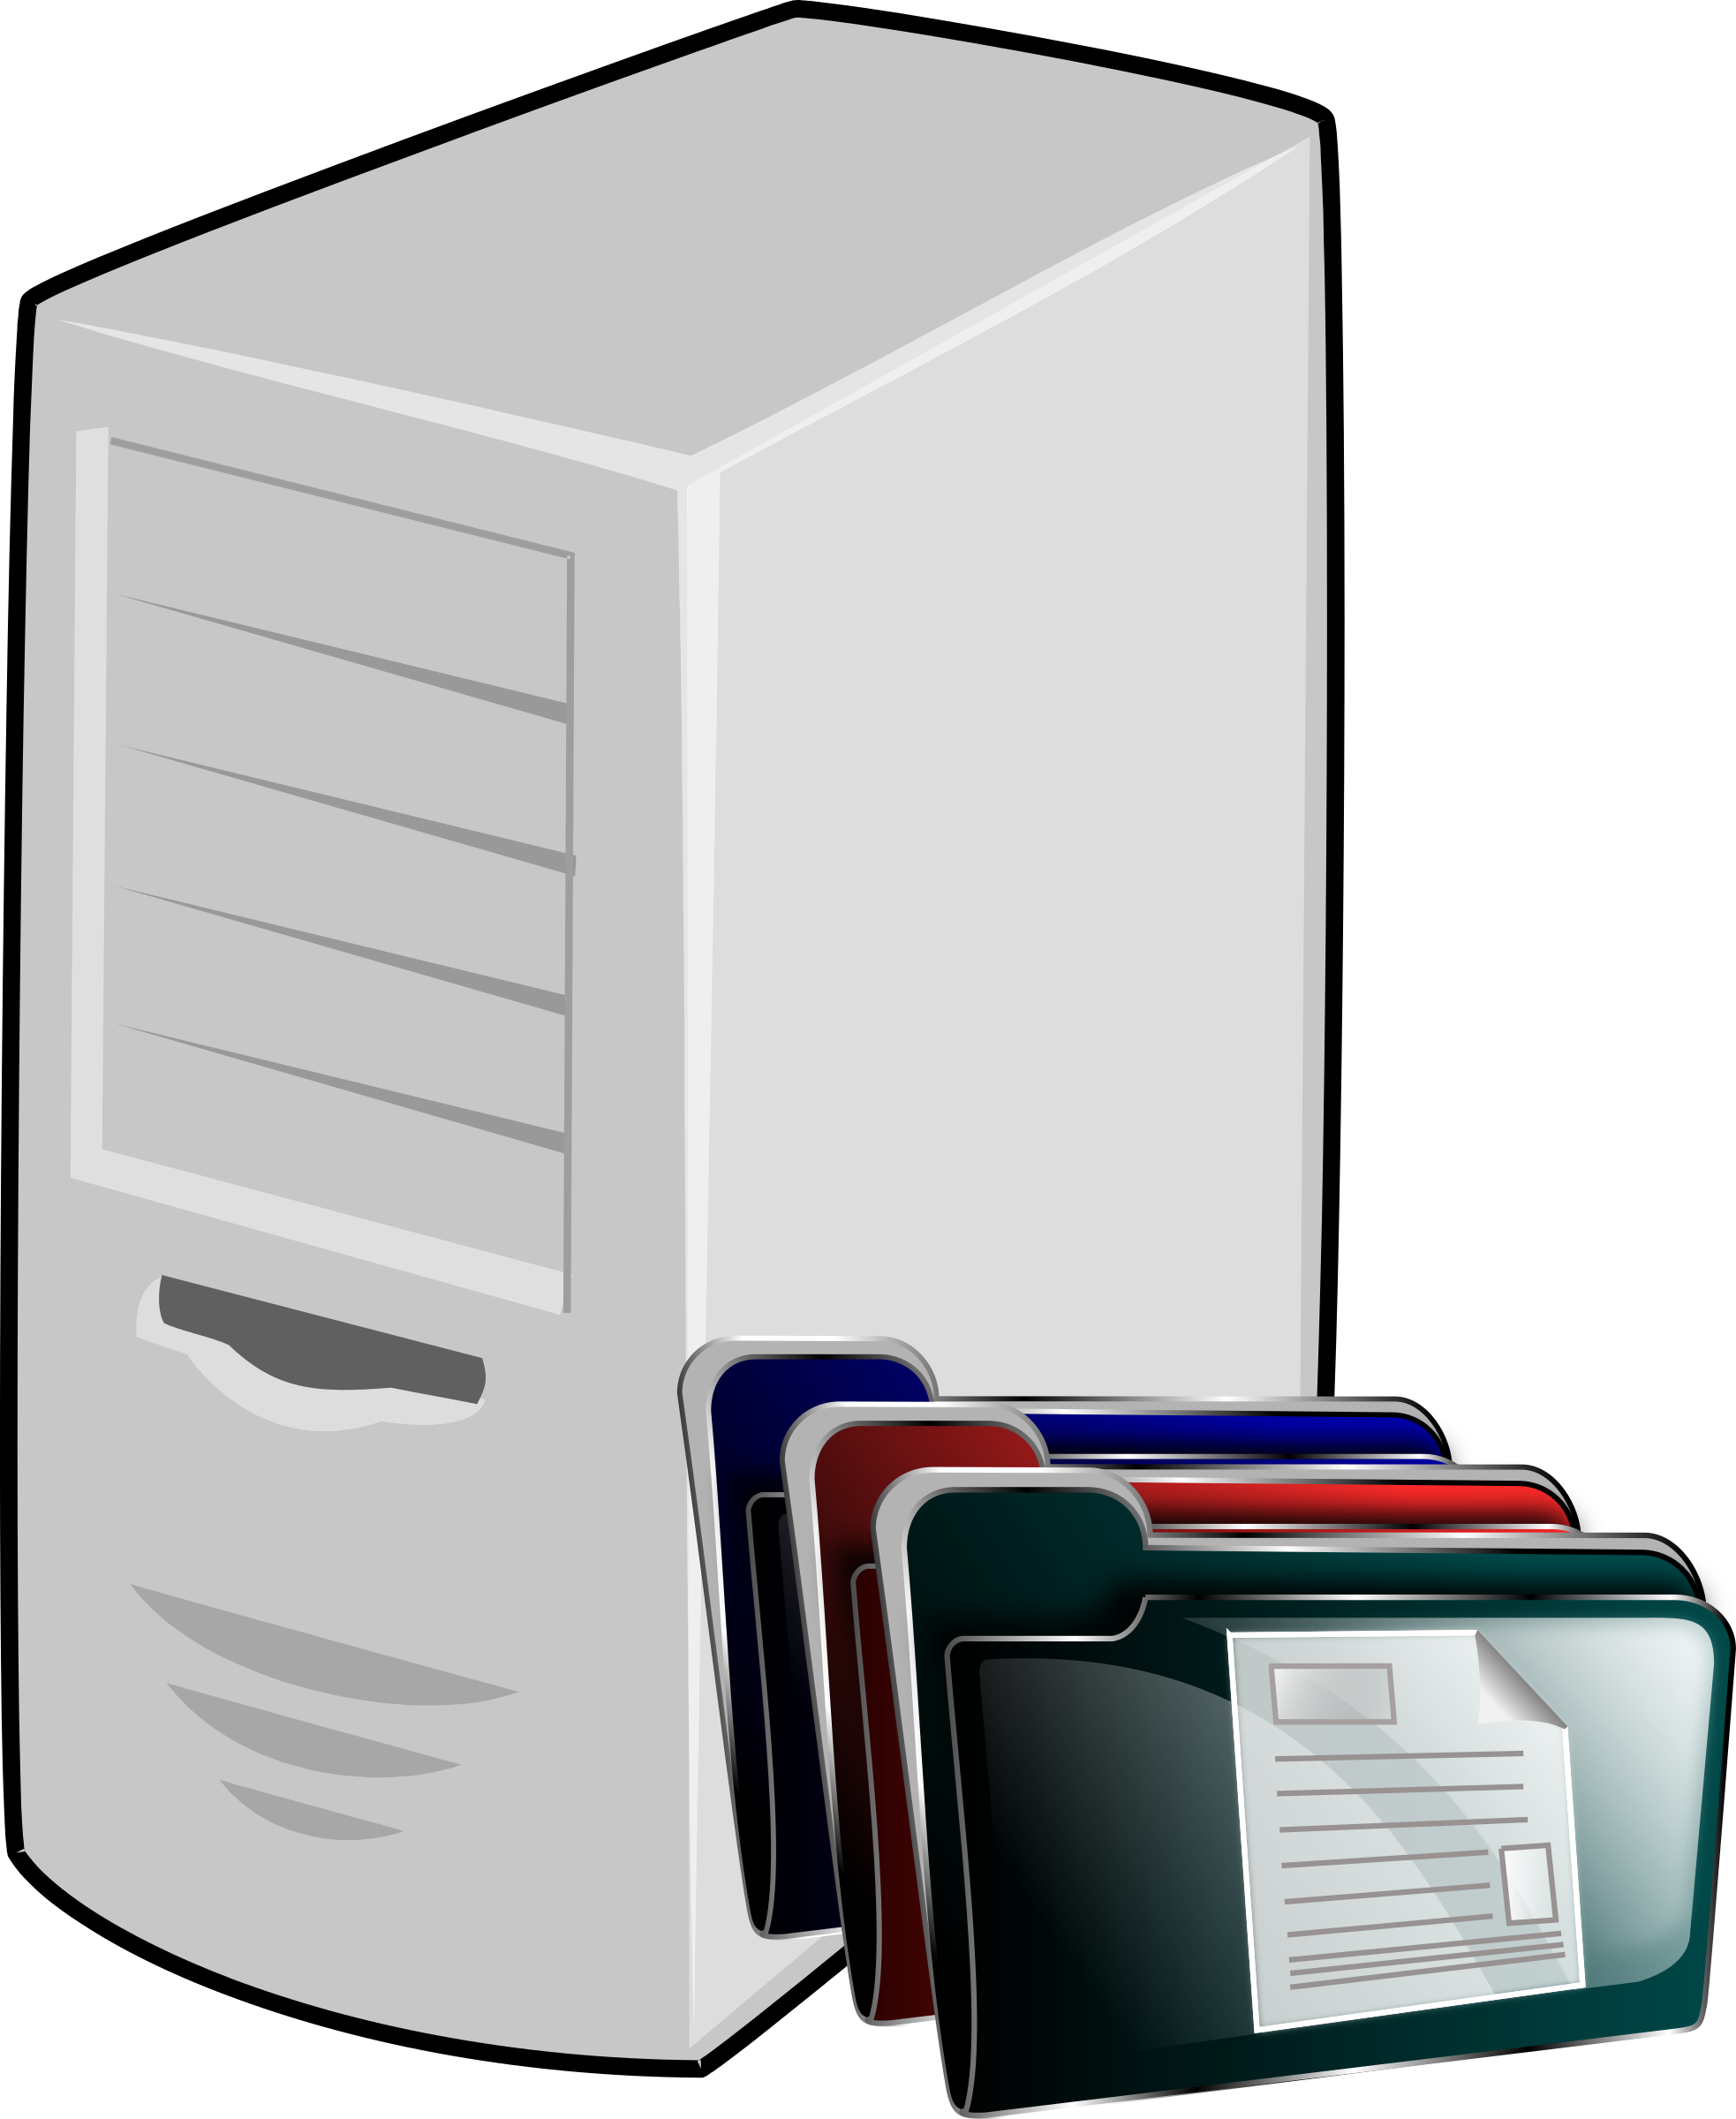 Folder clipart file management. Document server big image